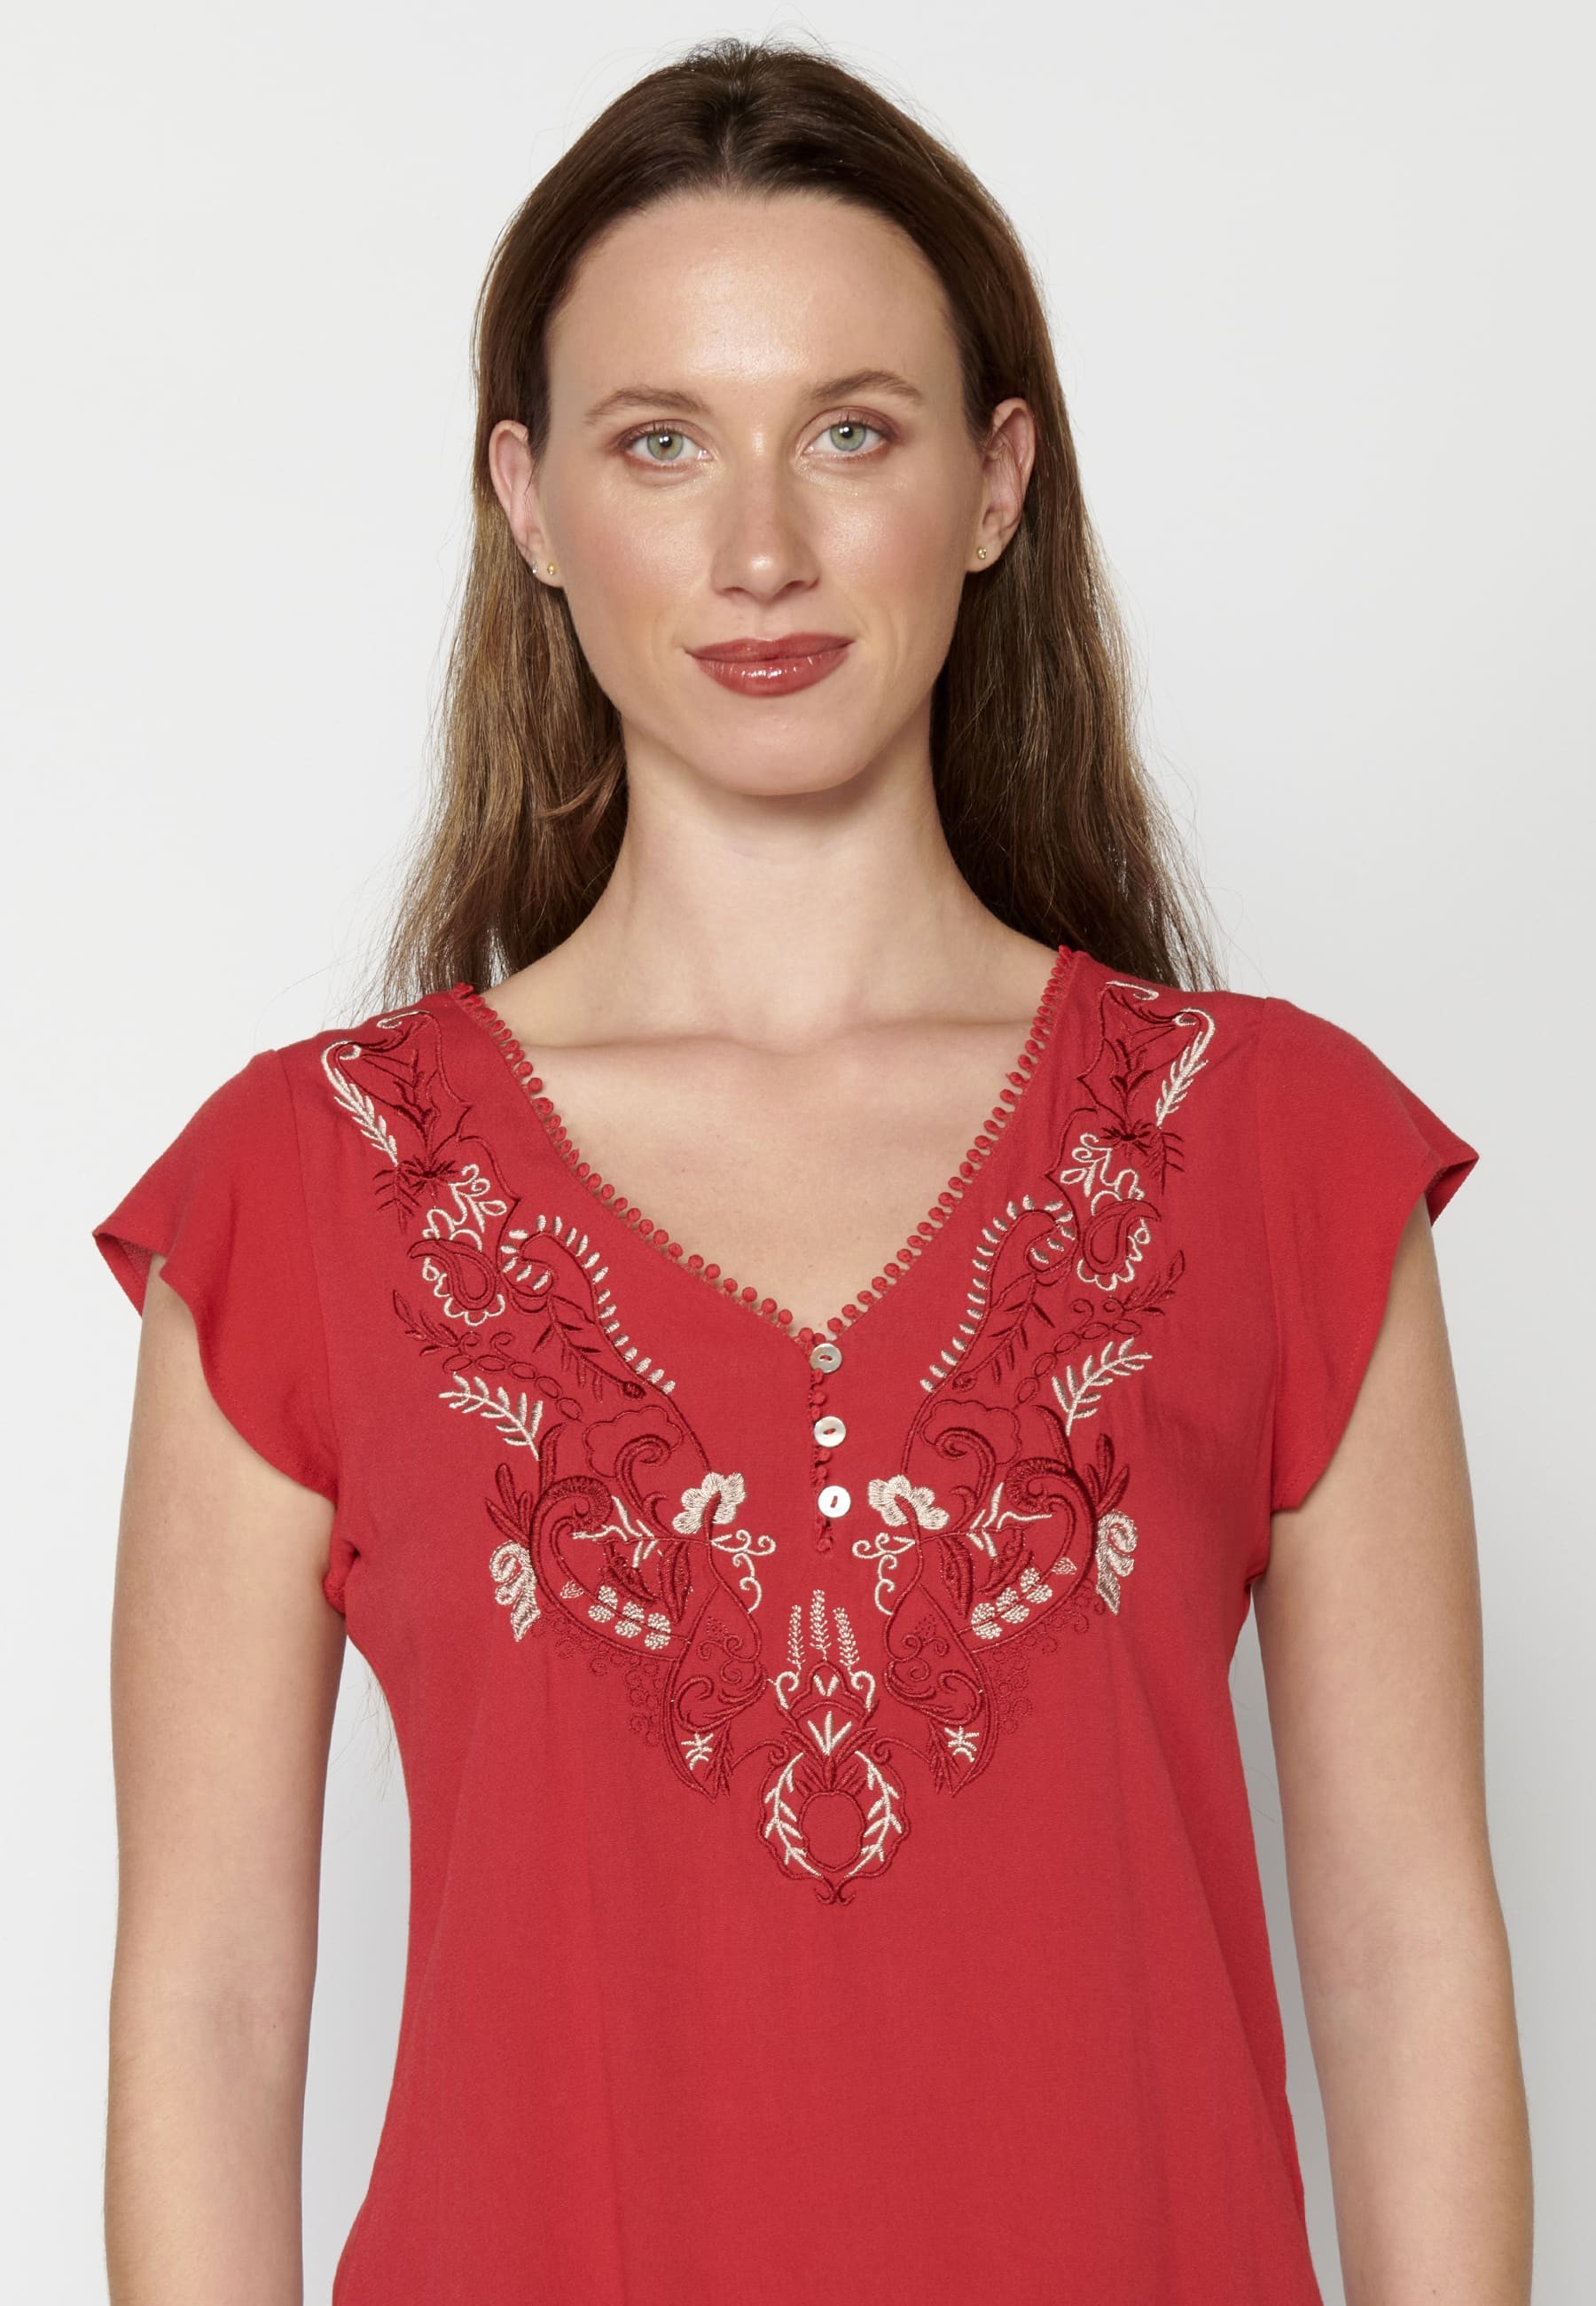 Kurzärmlige Bluse mit floralen Details in roter Farbe für Damen